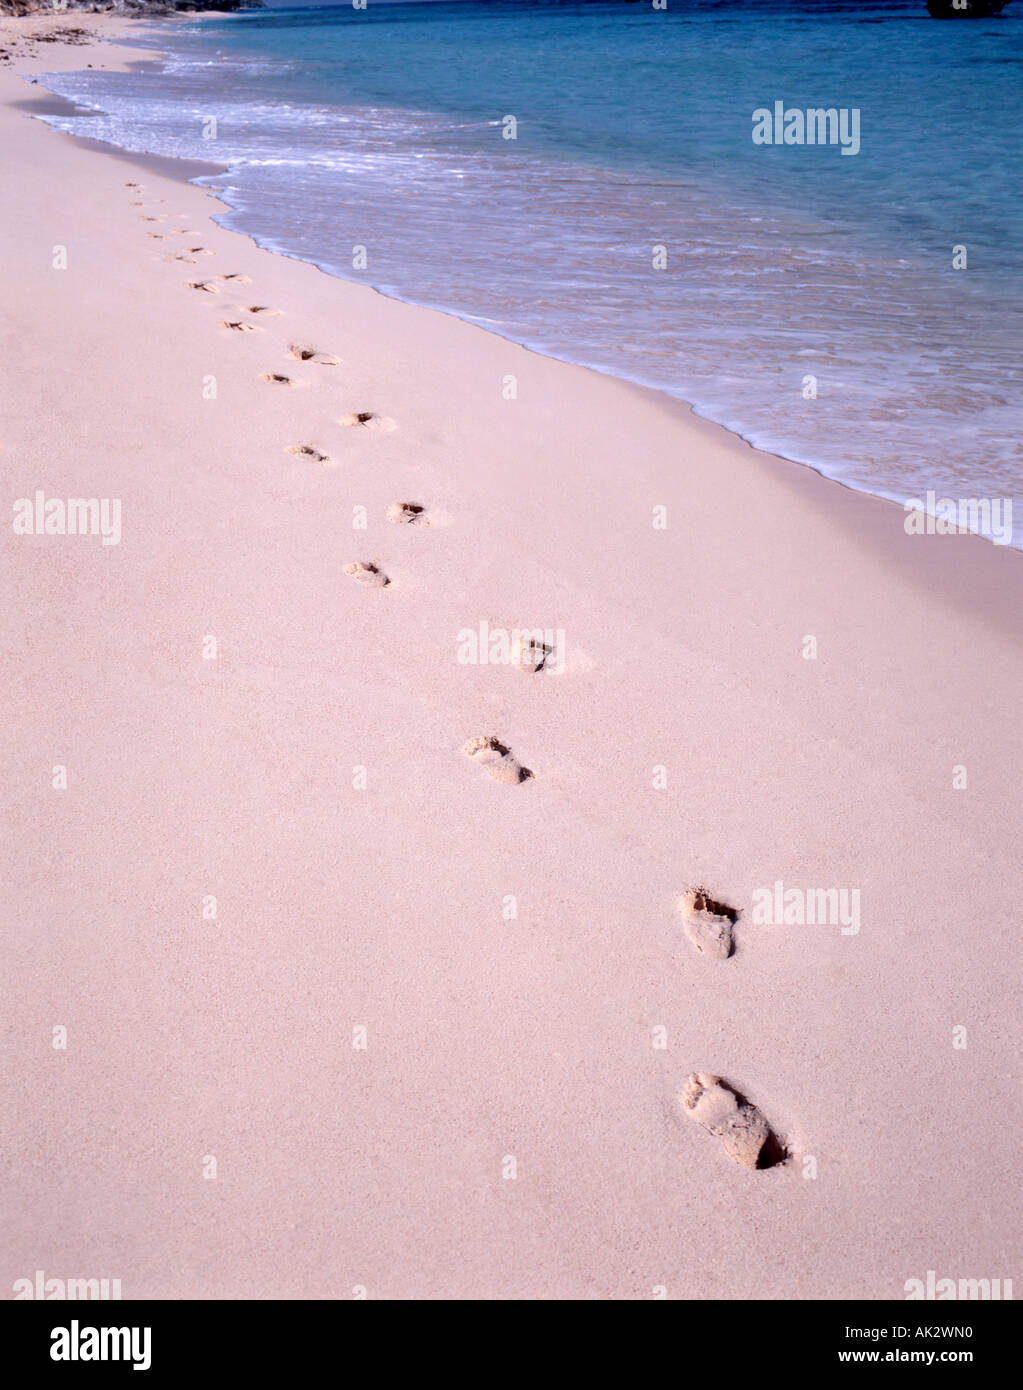 Impronte nella sabbia dal bordo dell'acqua, Warwick Long Bay, Warwick, Bermuda Foto Stock